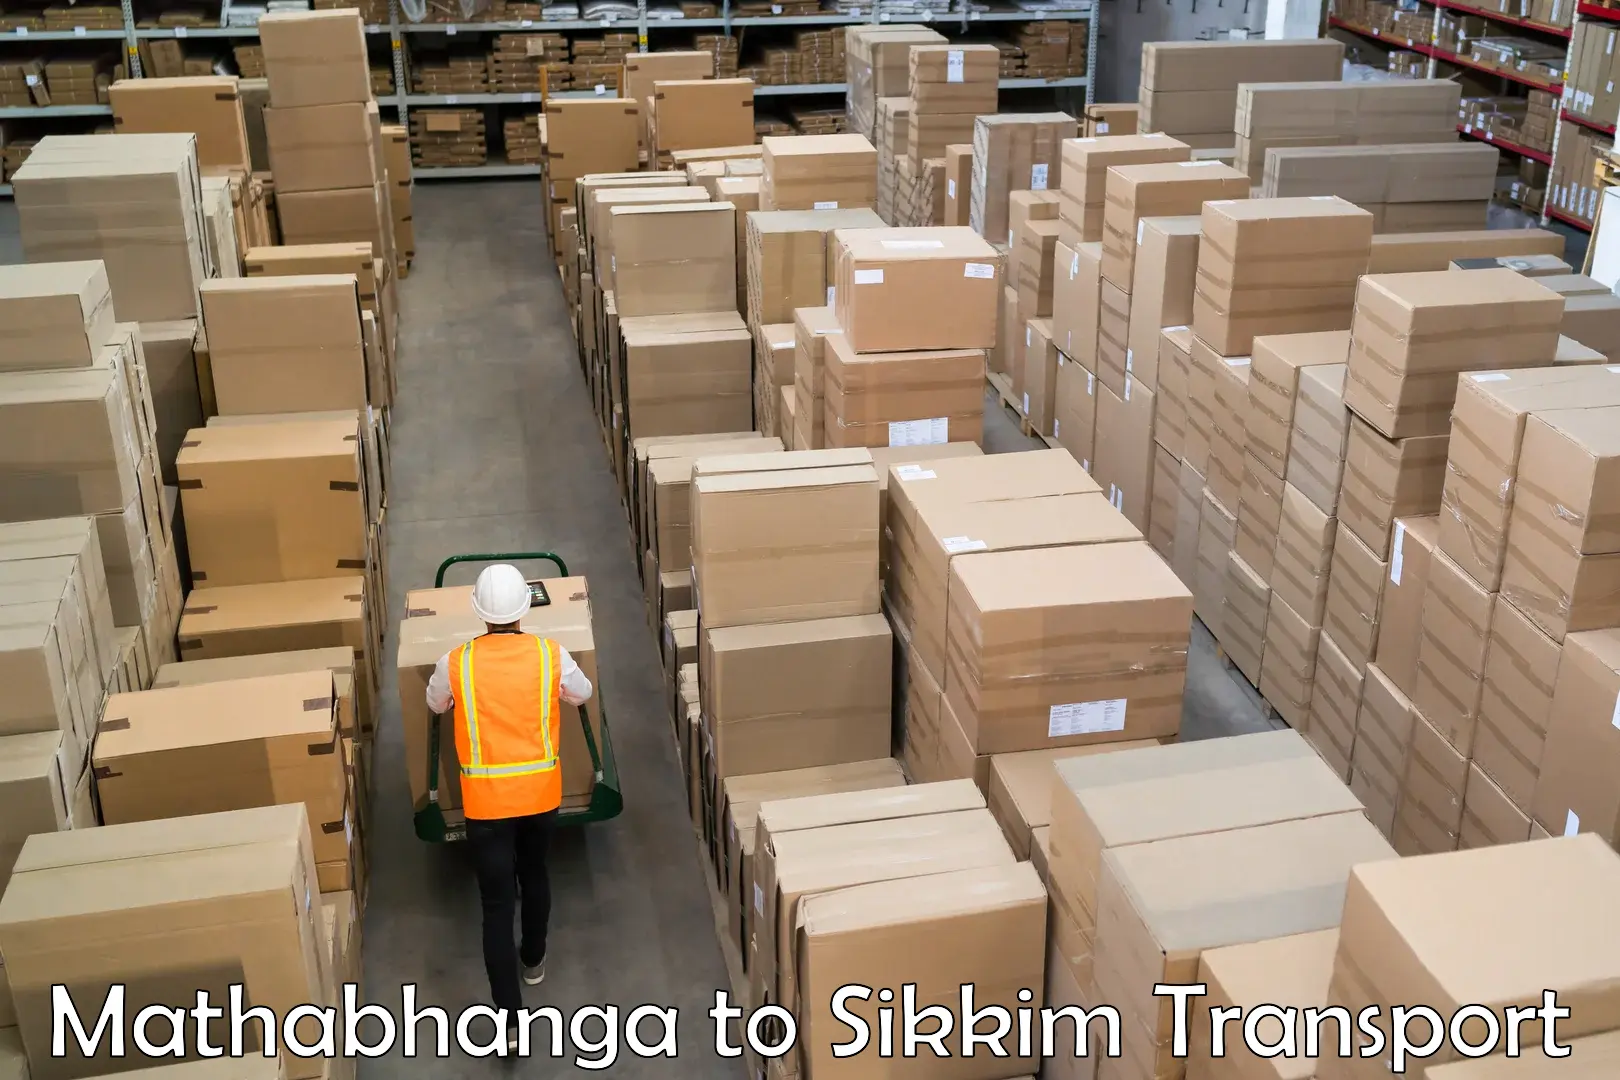 Furniture transport service Mathabhanga to Pelling